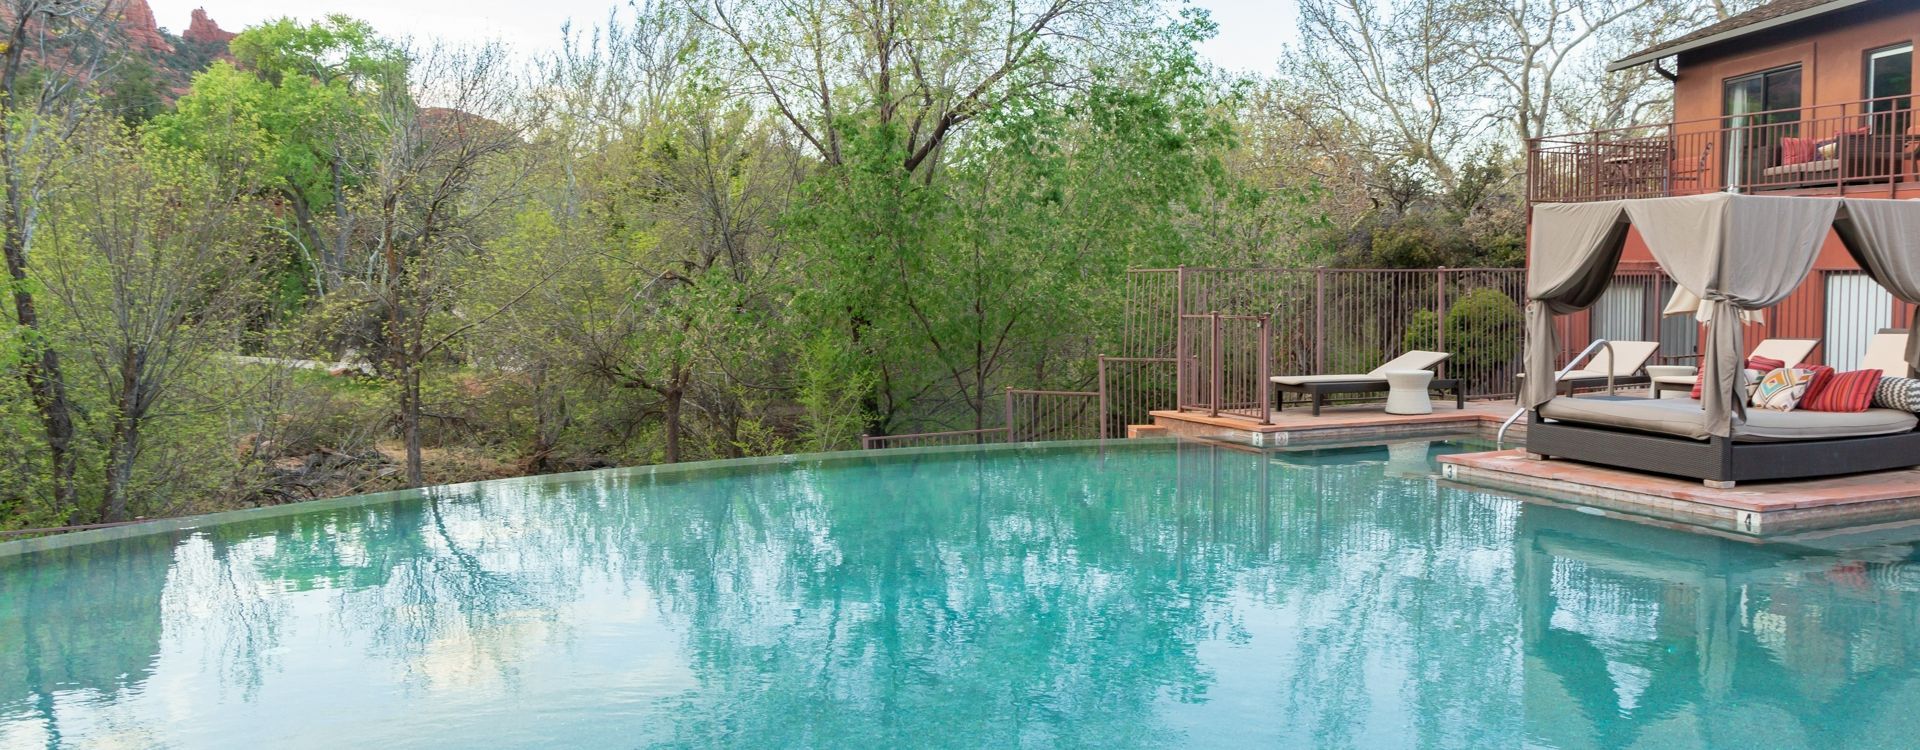 amara-resort-pool-1.jpg